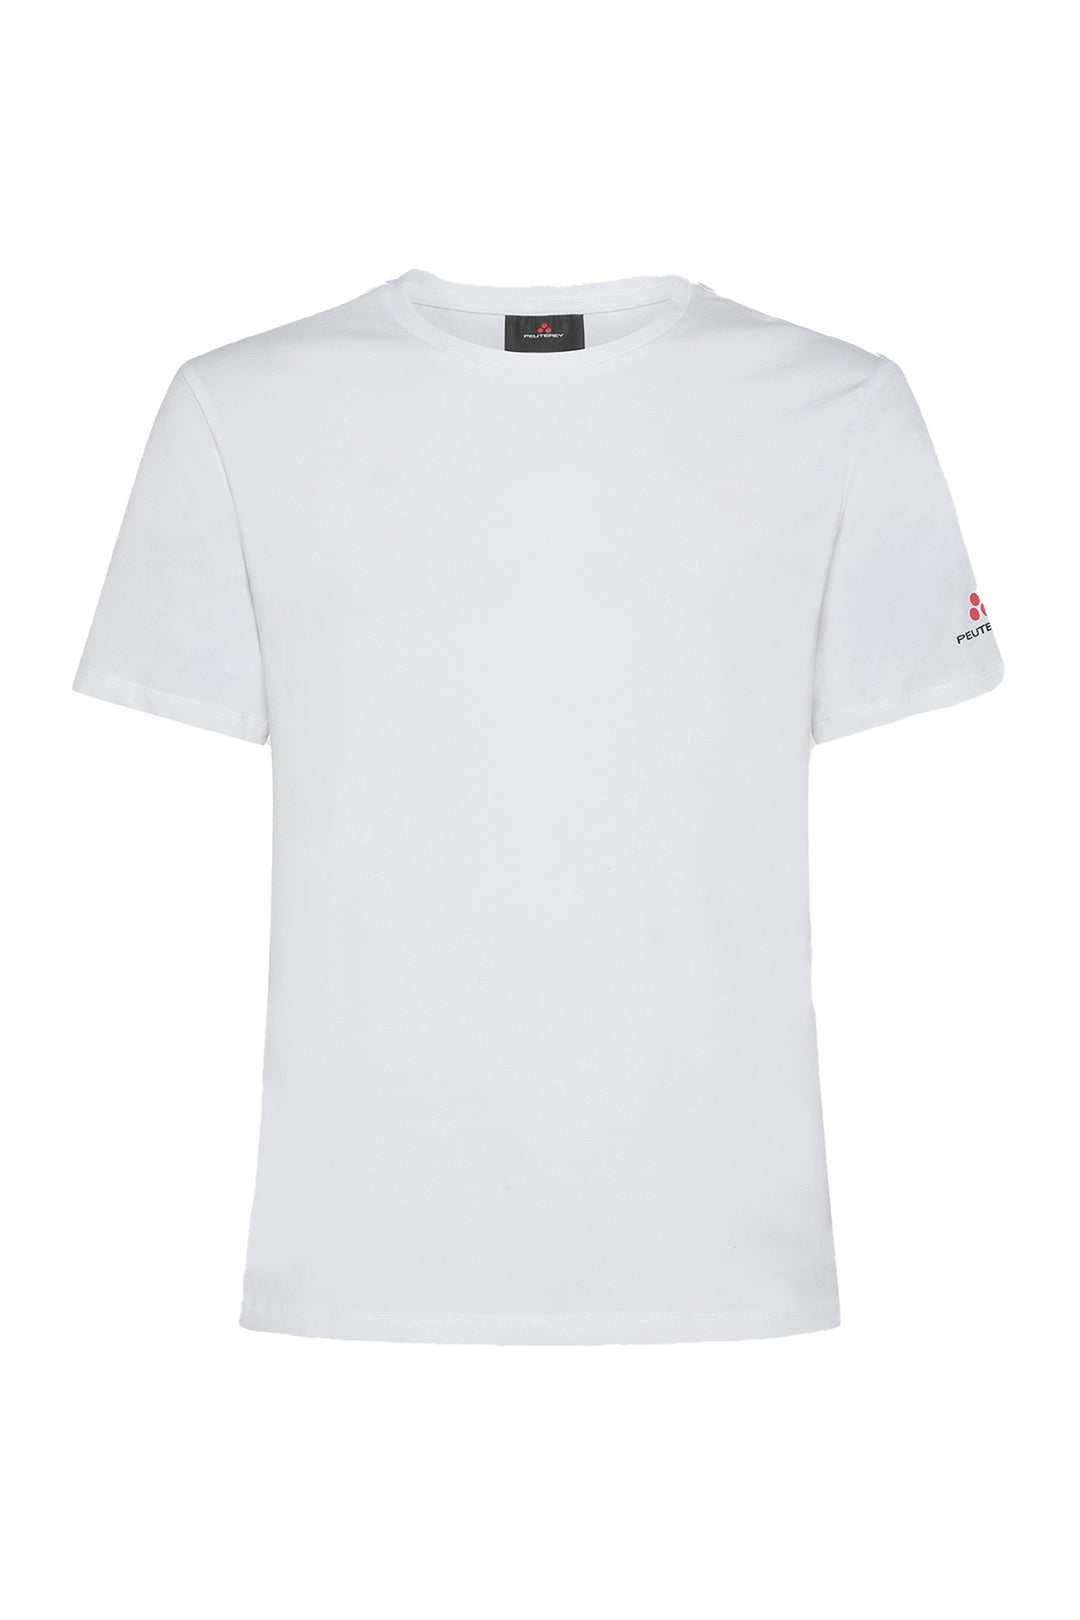 PEUTEREY T-shirt bianca in cotone con logo sulla manica - Mancinelli 1954